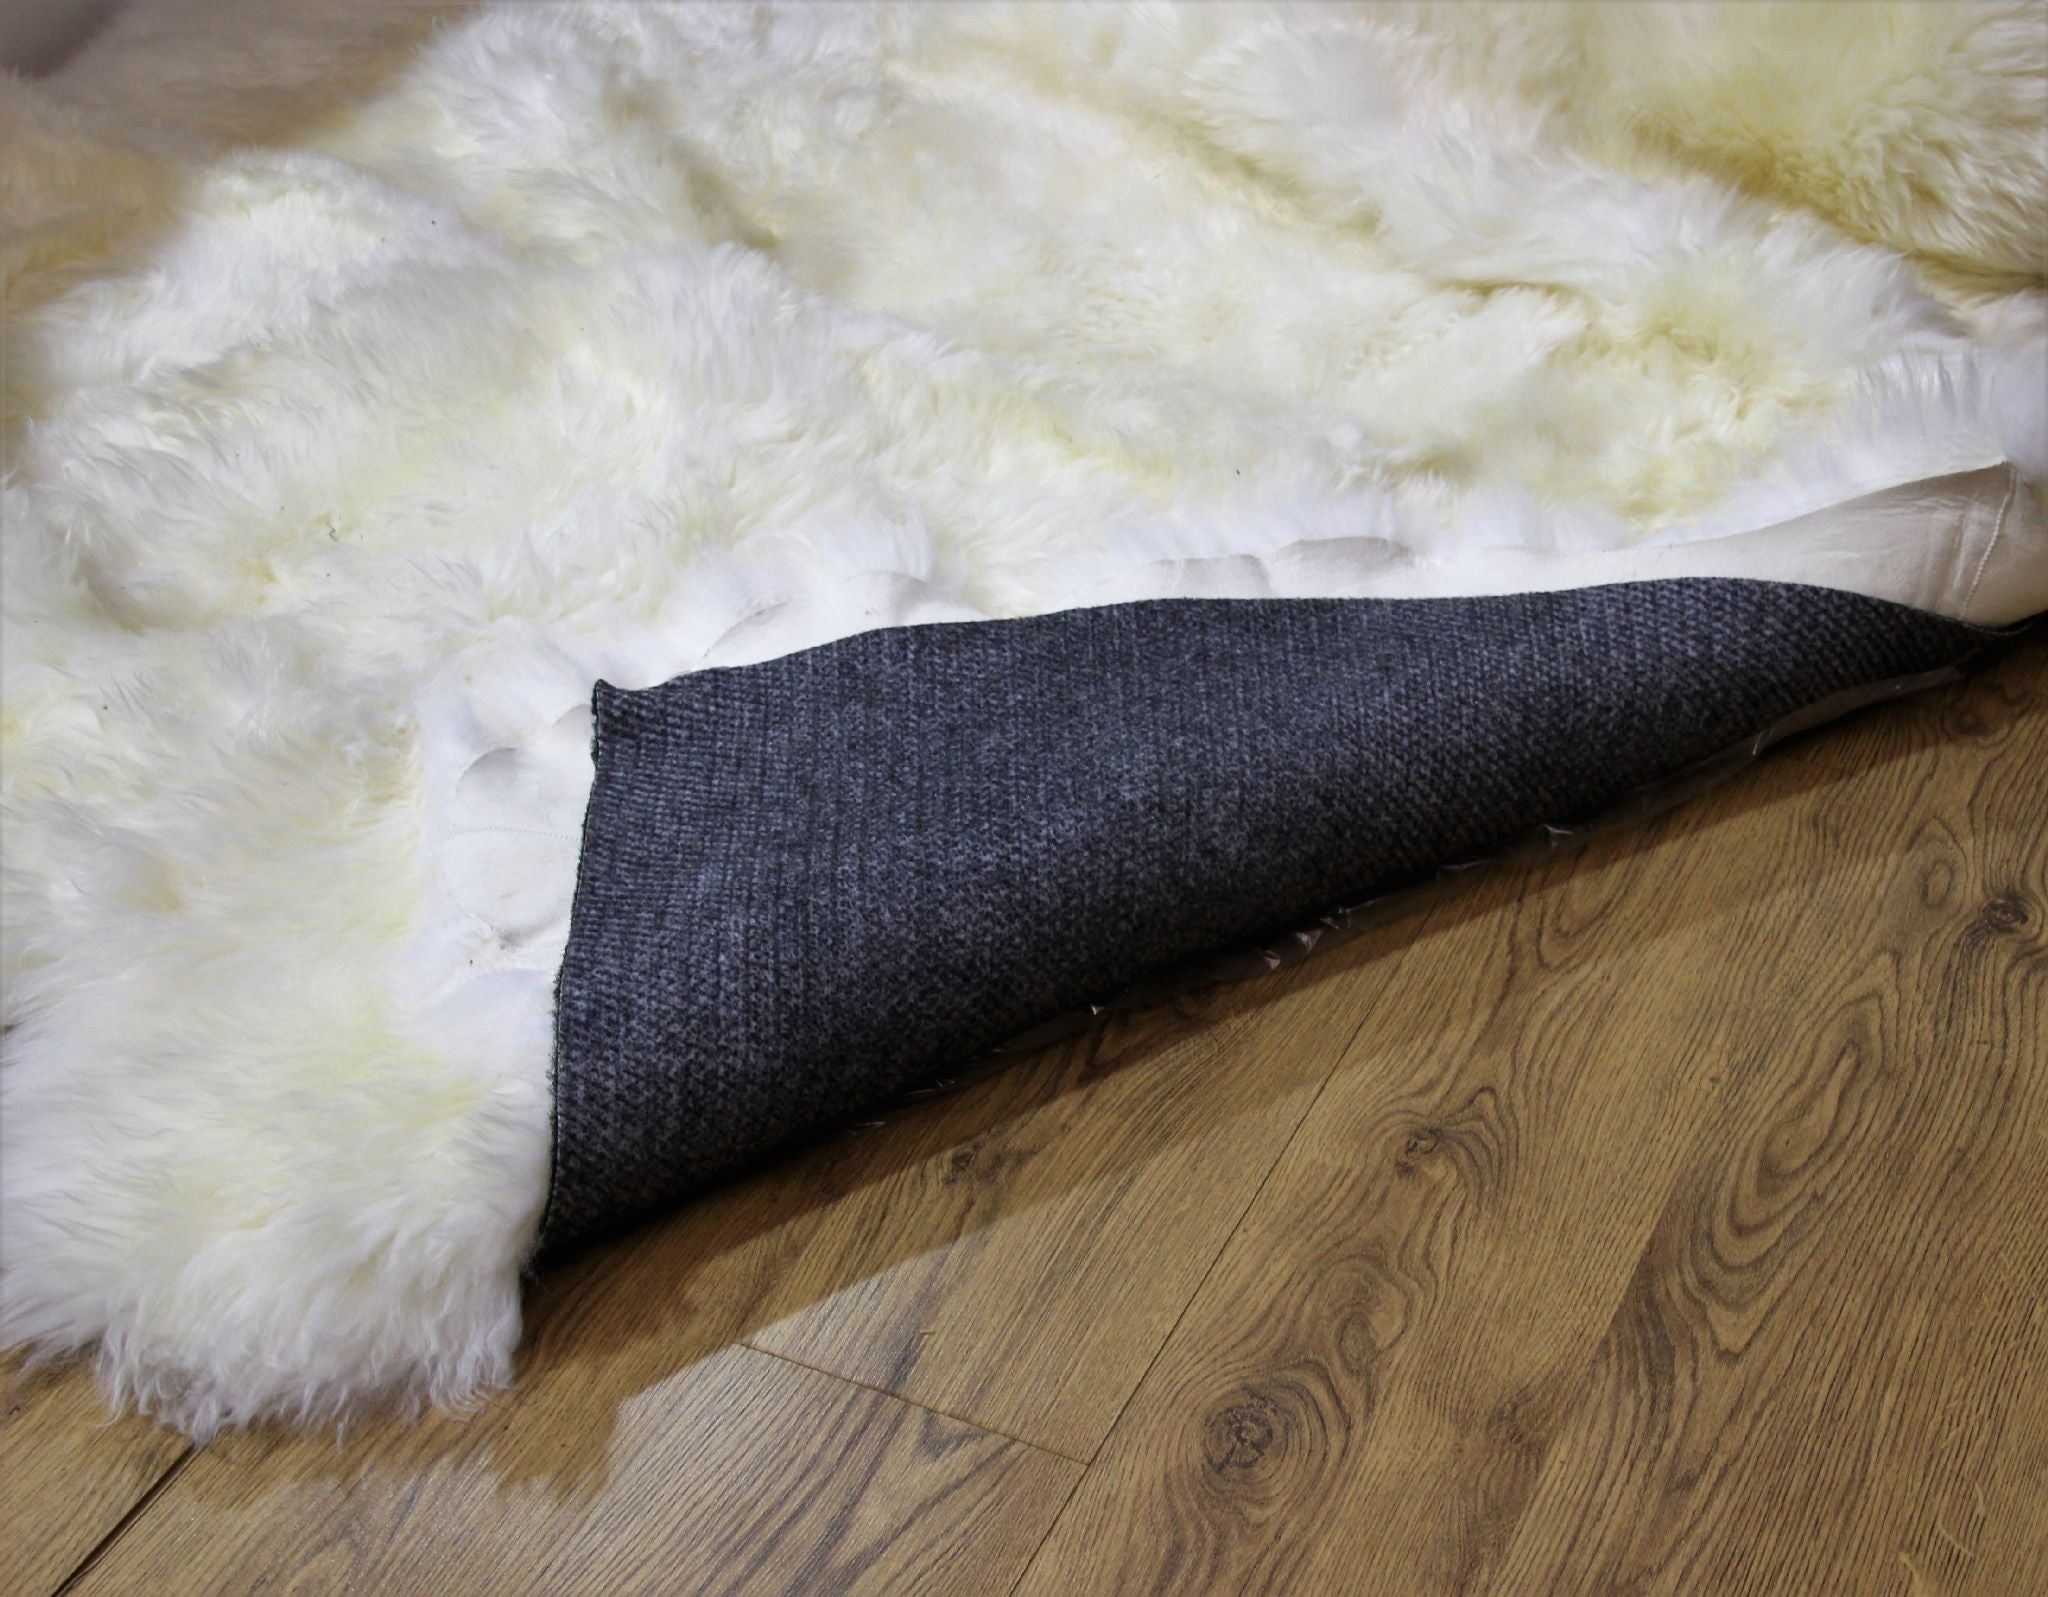 Non-Slip Rug Underlay for Carpets & Hard Floors